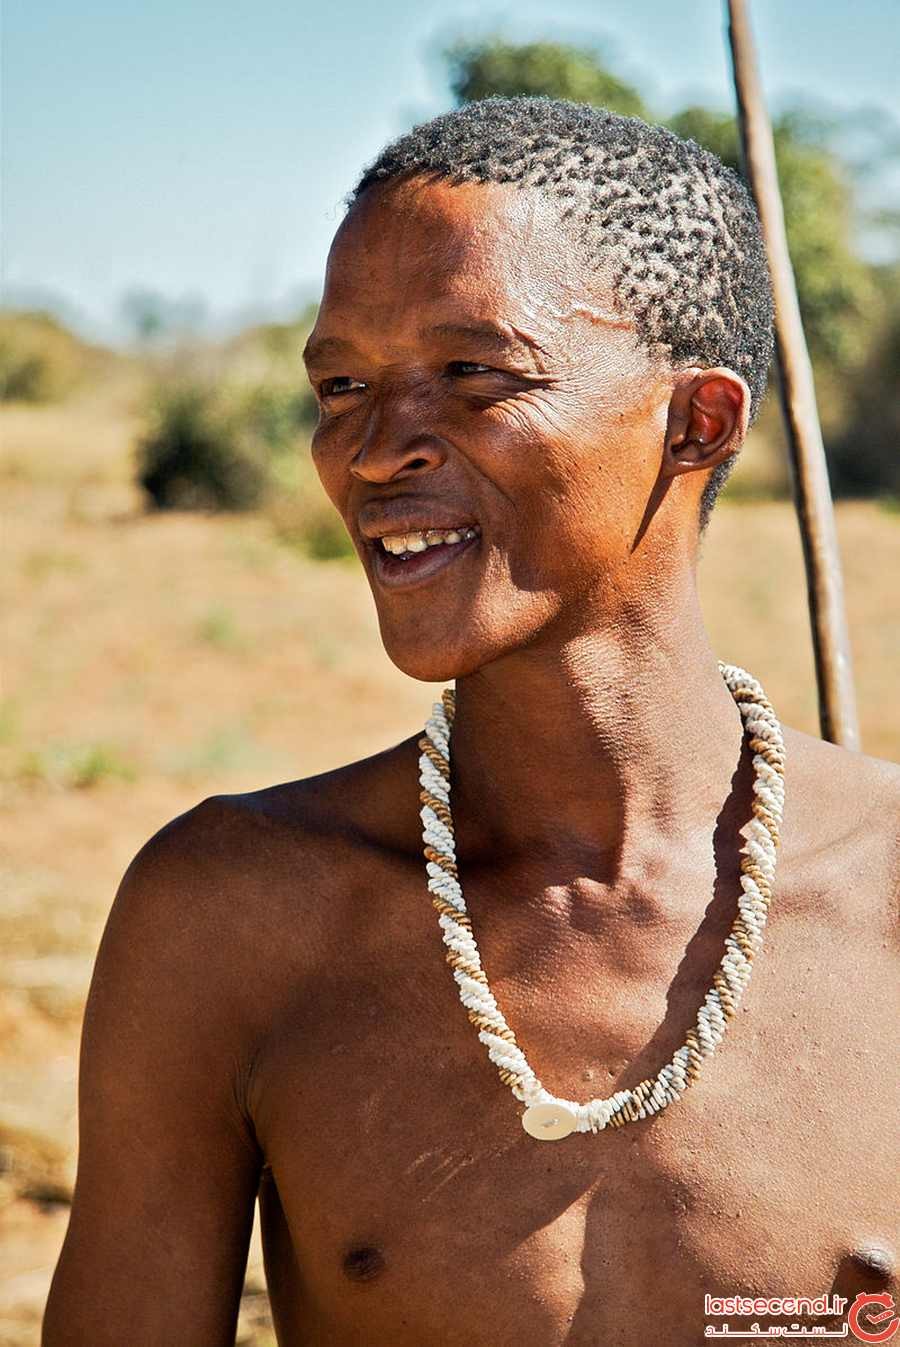 آنچه در مورد انسان های اولیه در آفریقای جنوبی یا خویسان می دانیم!